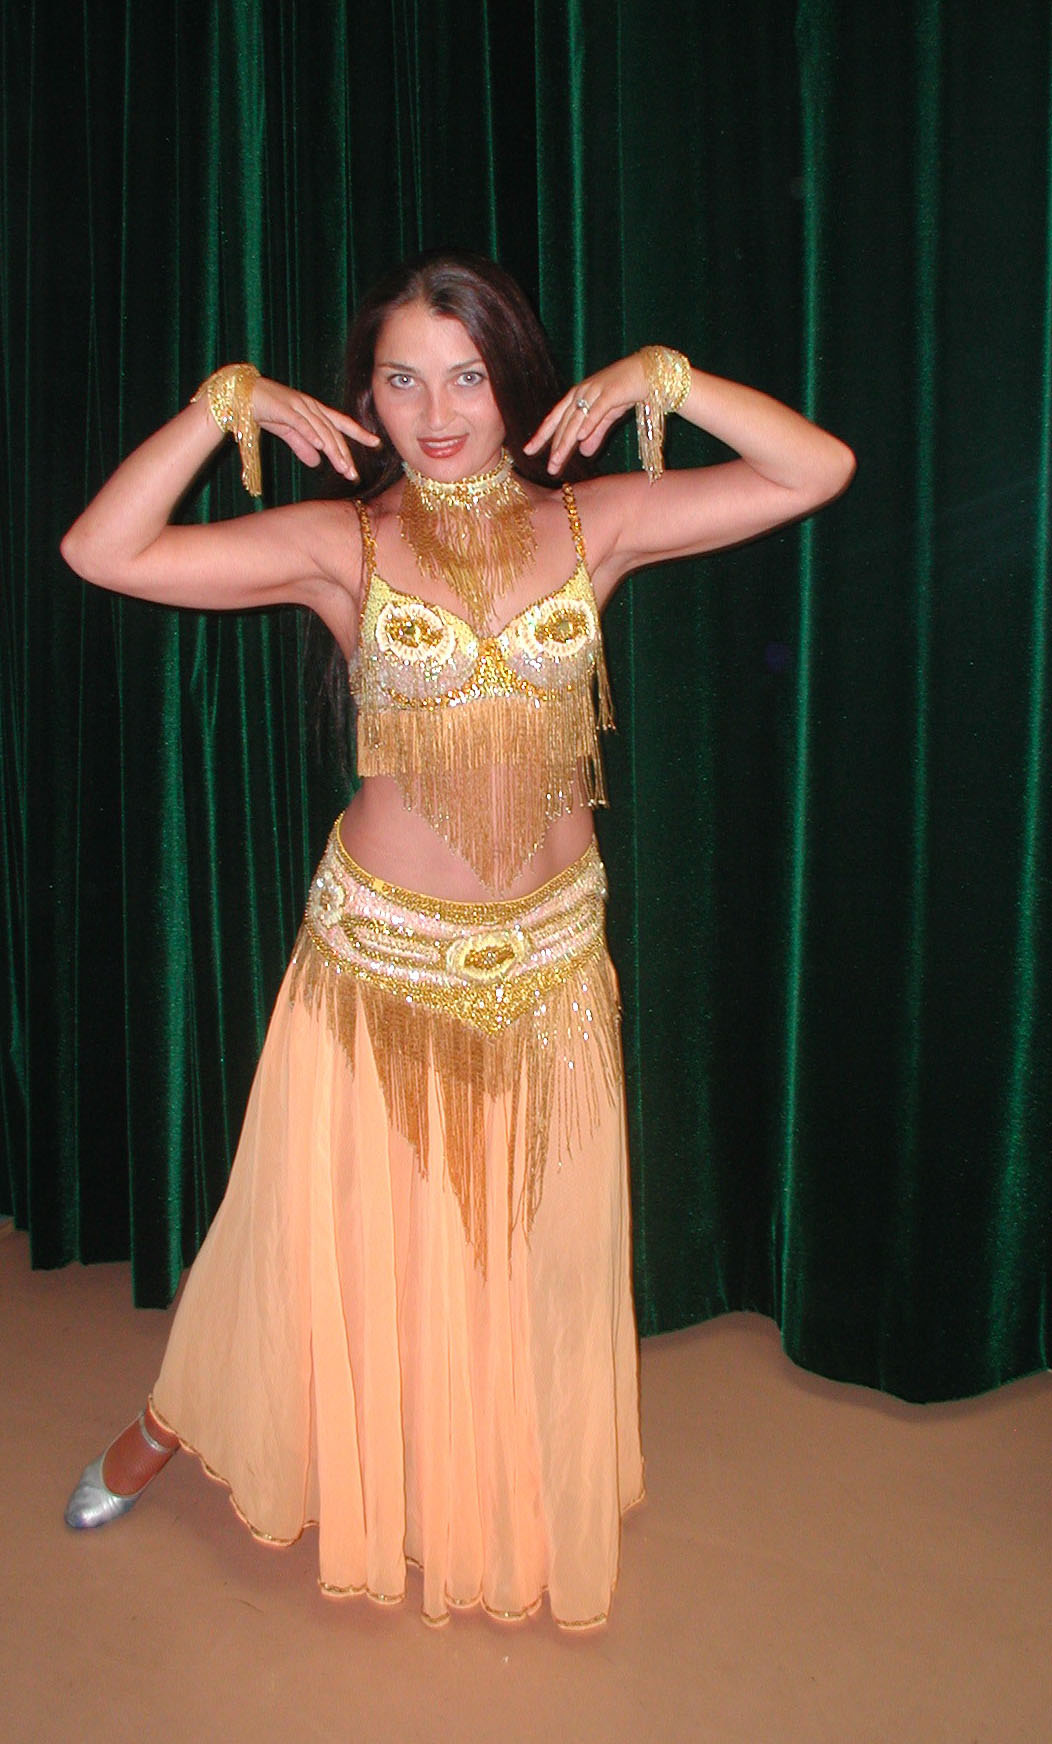 Belly Dancer Olga from Brooklyn, New York